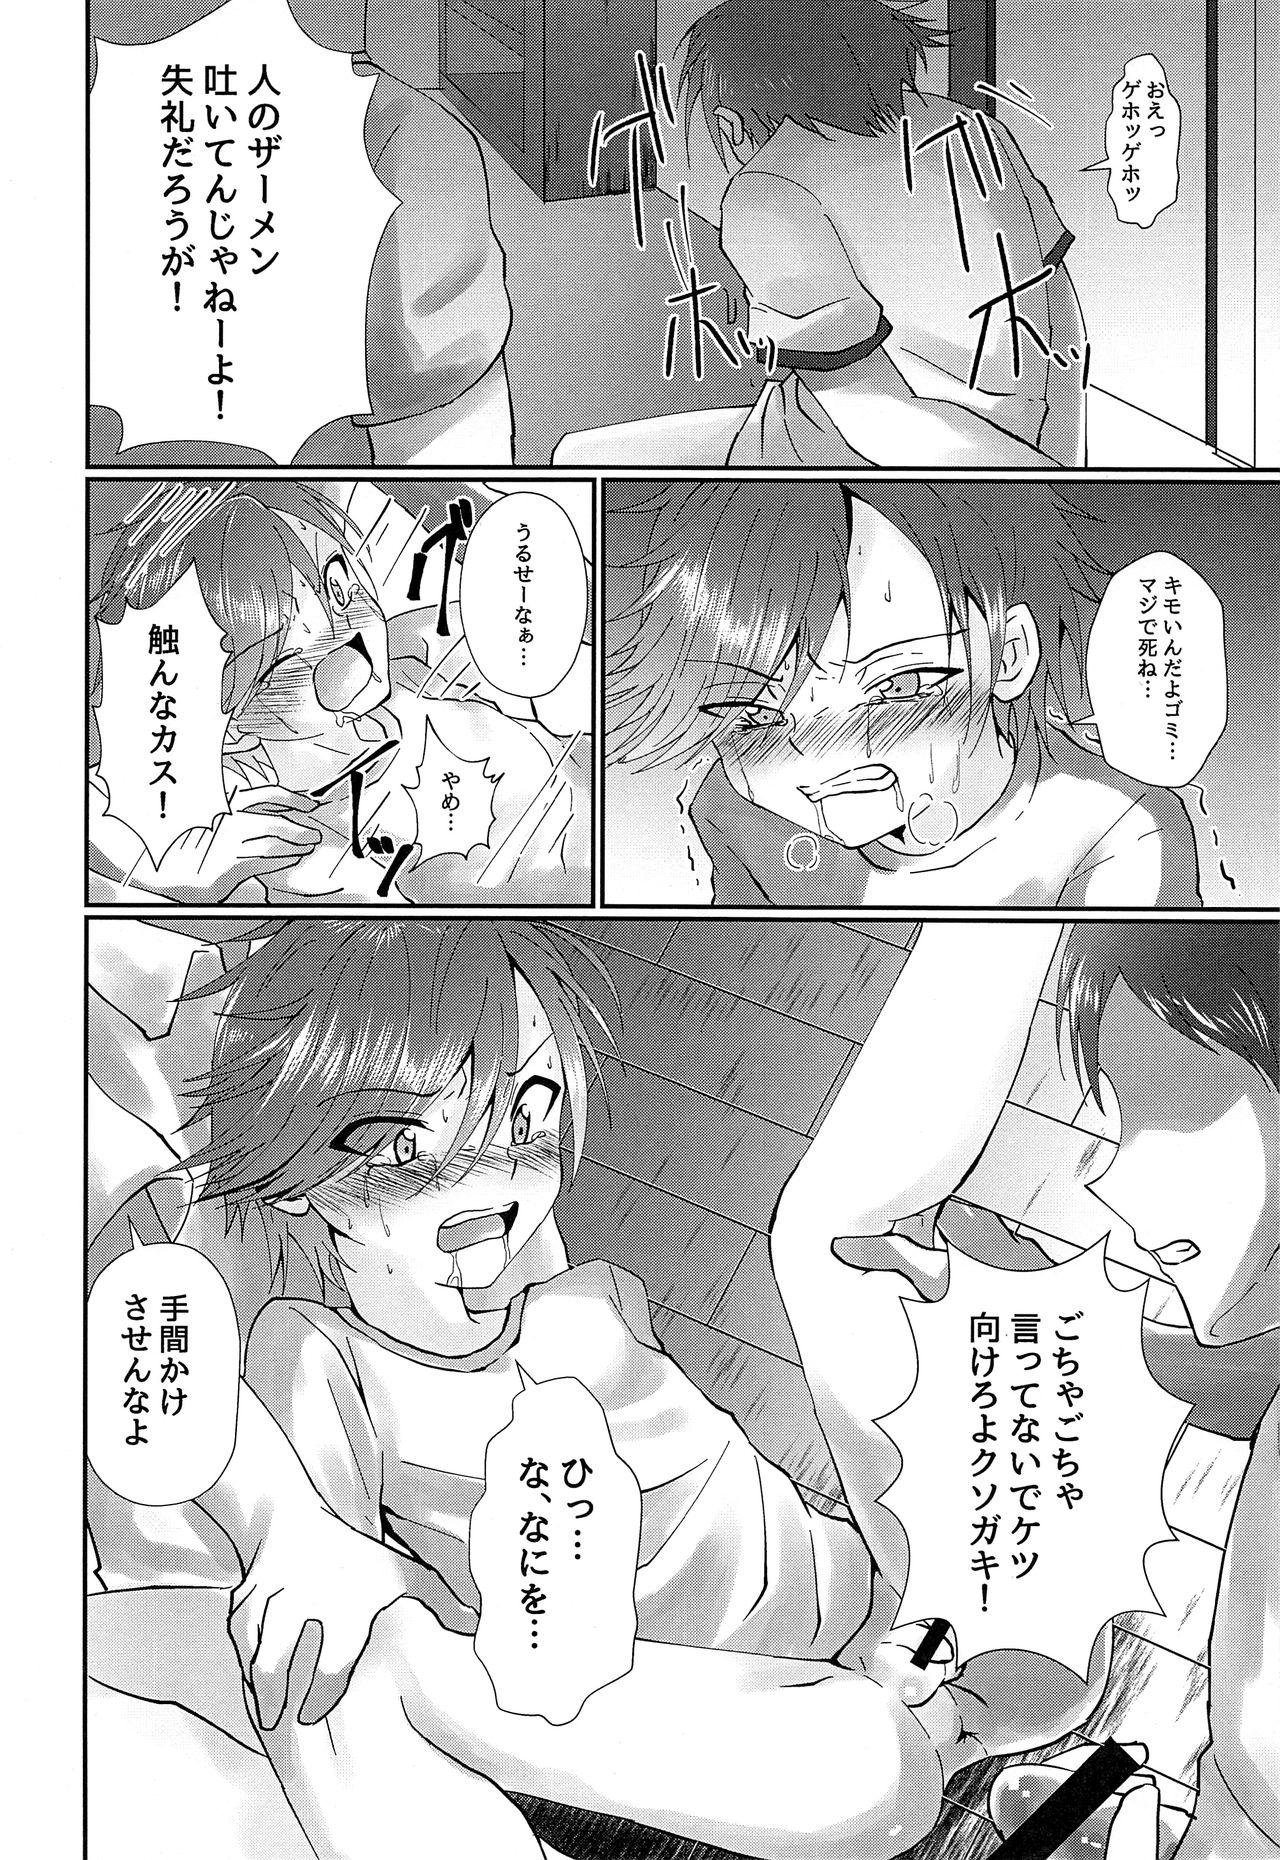 Ladyboy ki no tsuyoi shōnen o ri fujin ni re! vol.1 X - Page 11